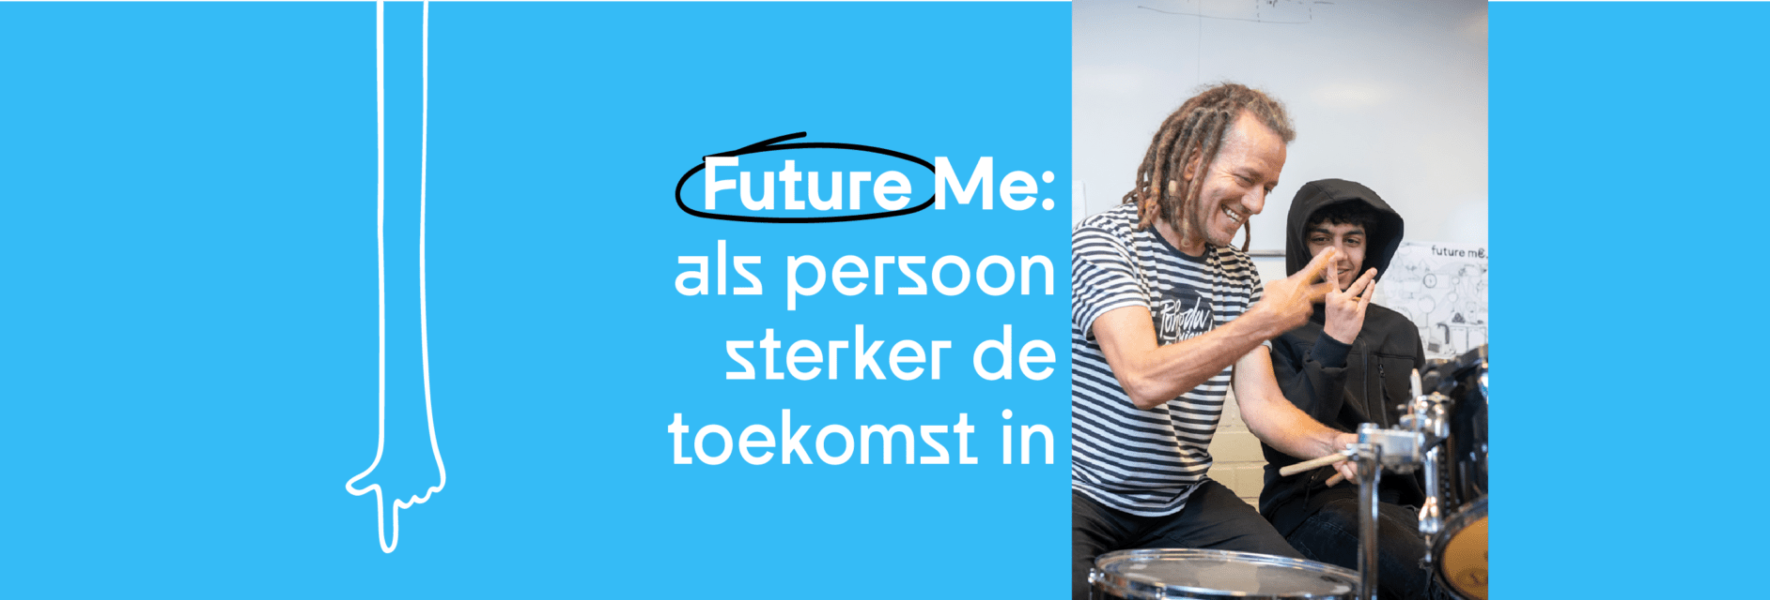 Beeld bij Future Me: als persoon sterker de toekomst in